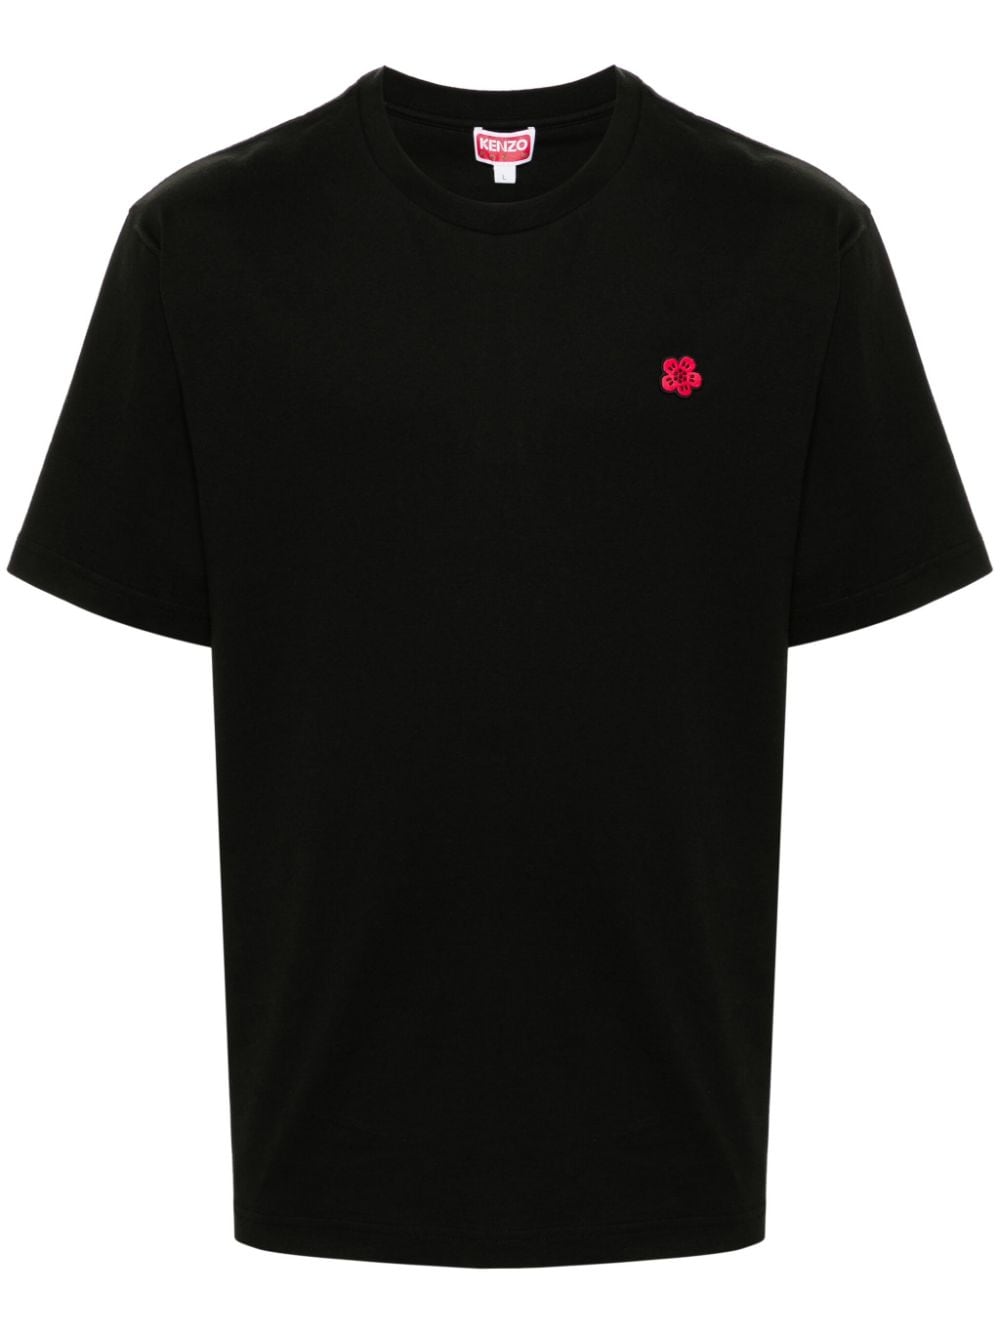 T-shirt nera logo boke flower rosso